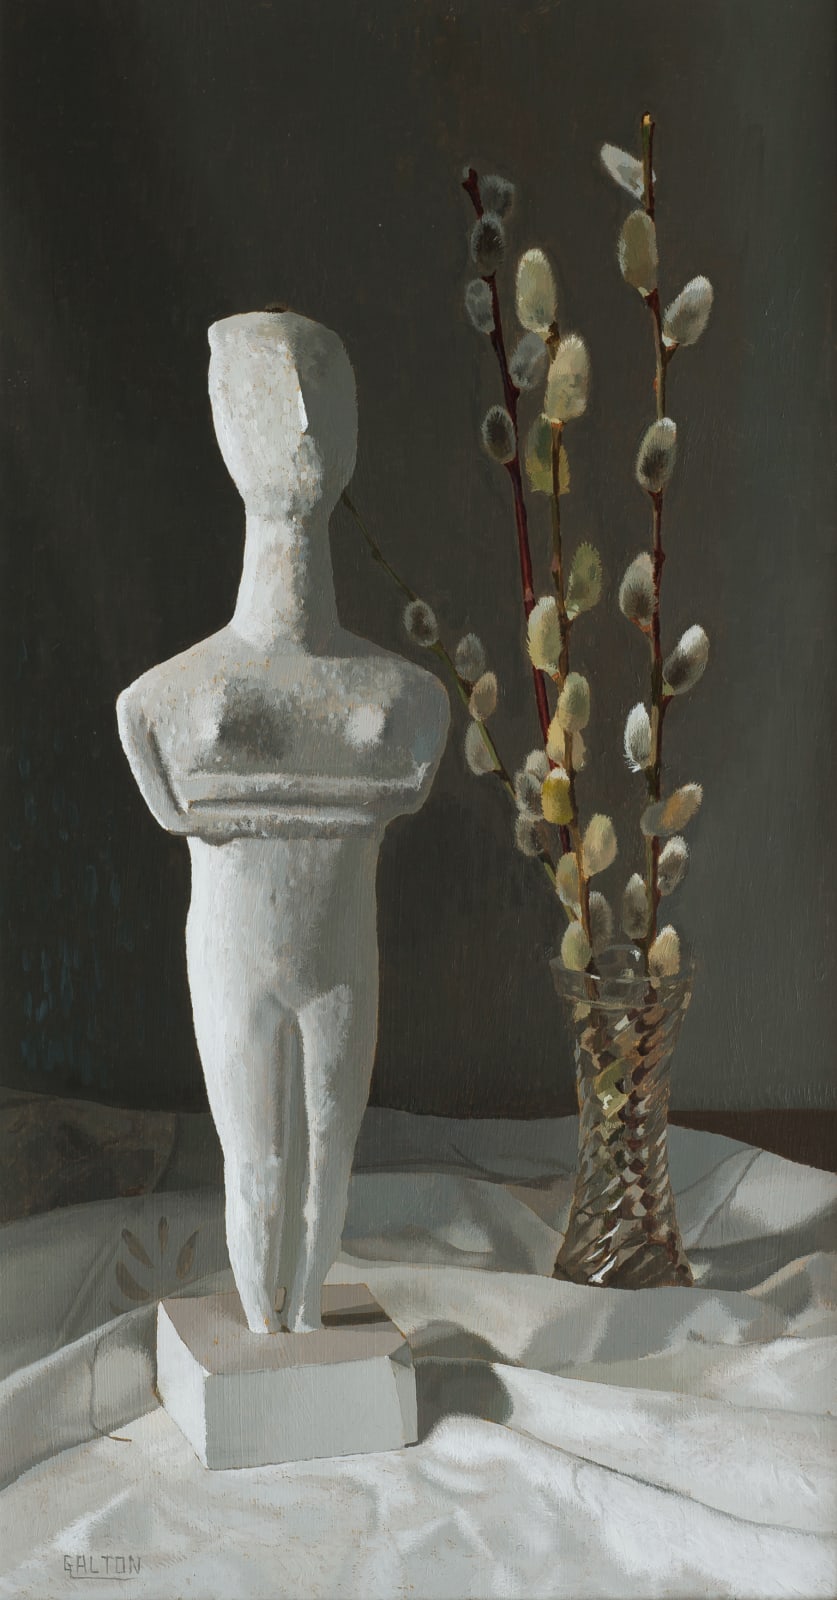 Jeremy Galton, Cycladic Figurine